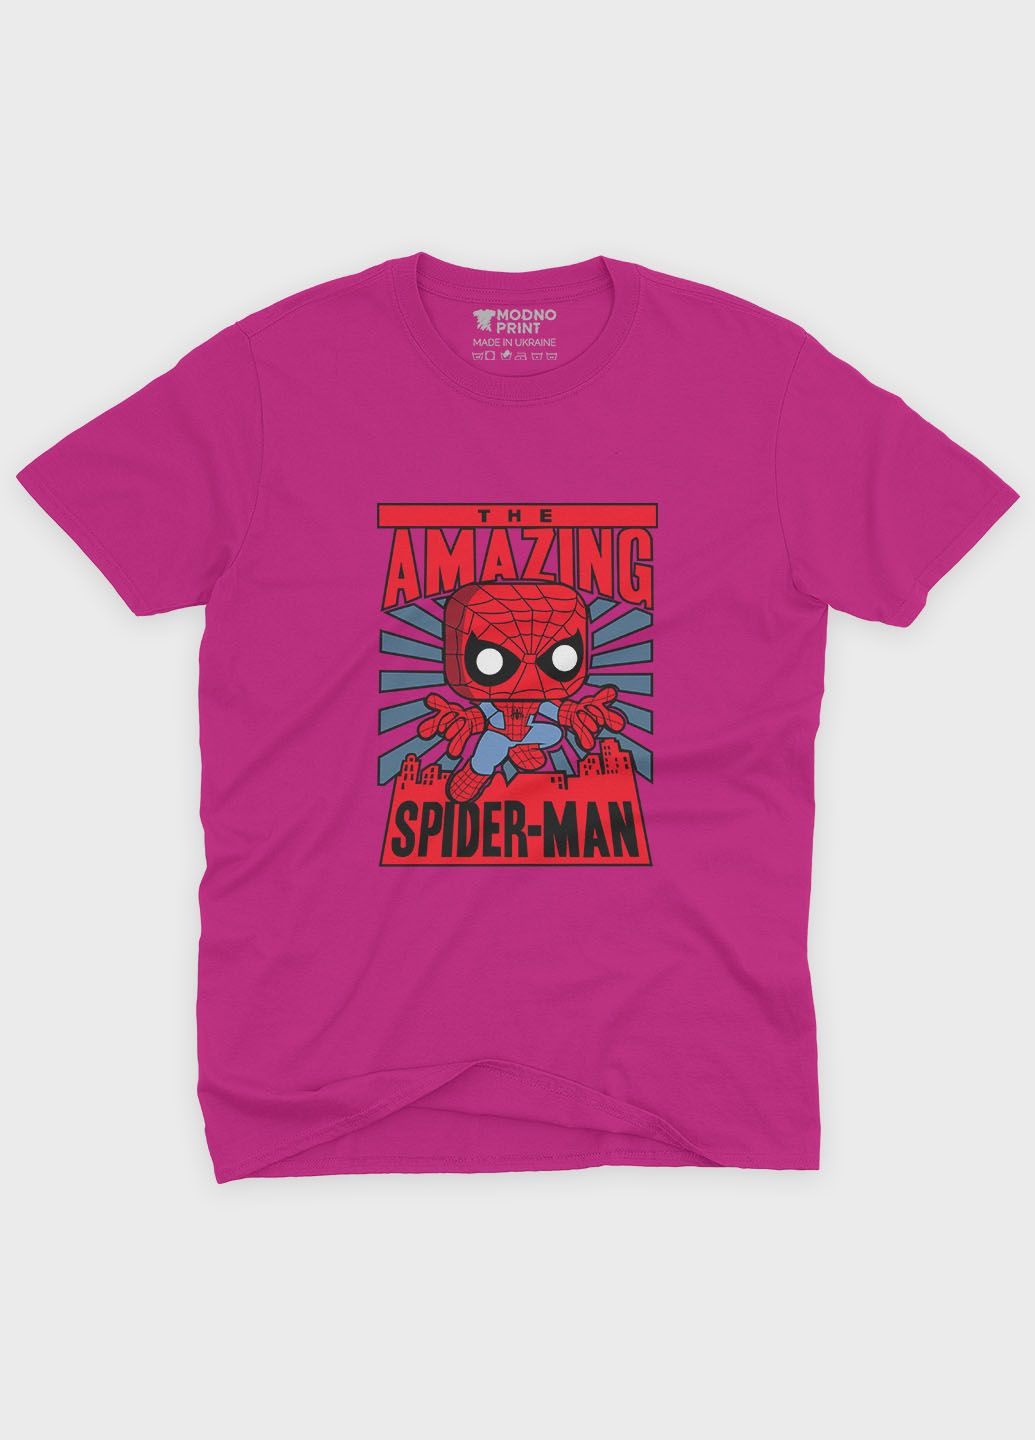 Розовая демисезонная футболка для девочки с принтом супергероя - человек-паук (ts001-1-fuxj-006-014-026-g) Modno